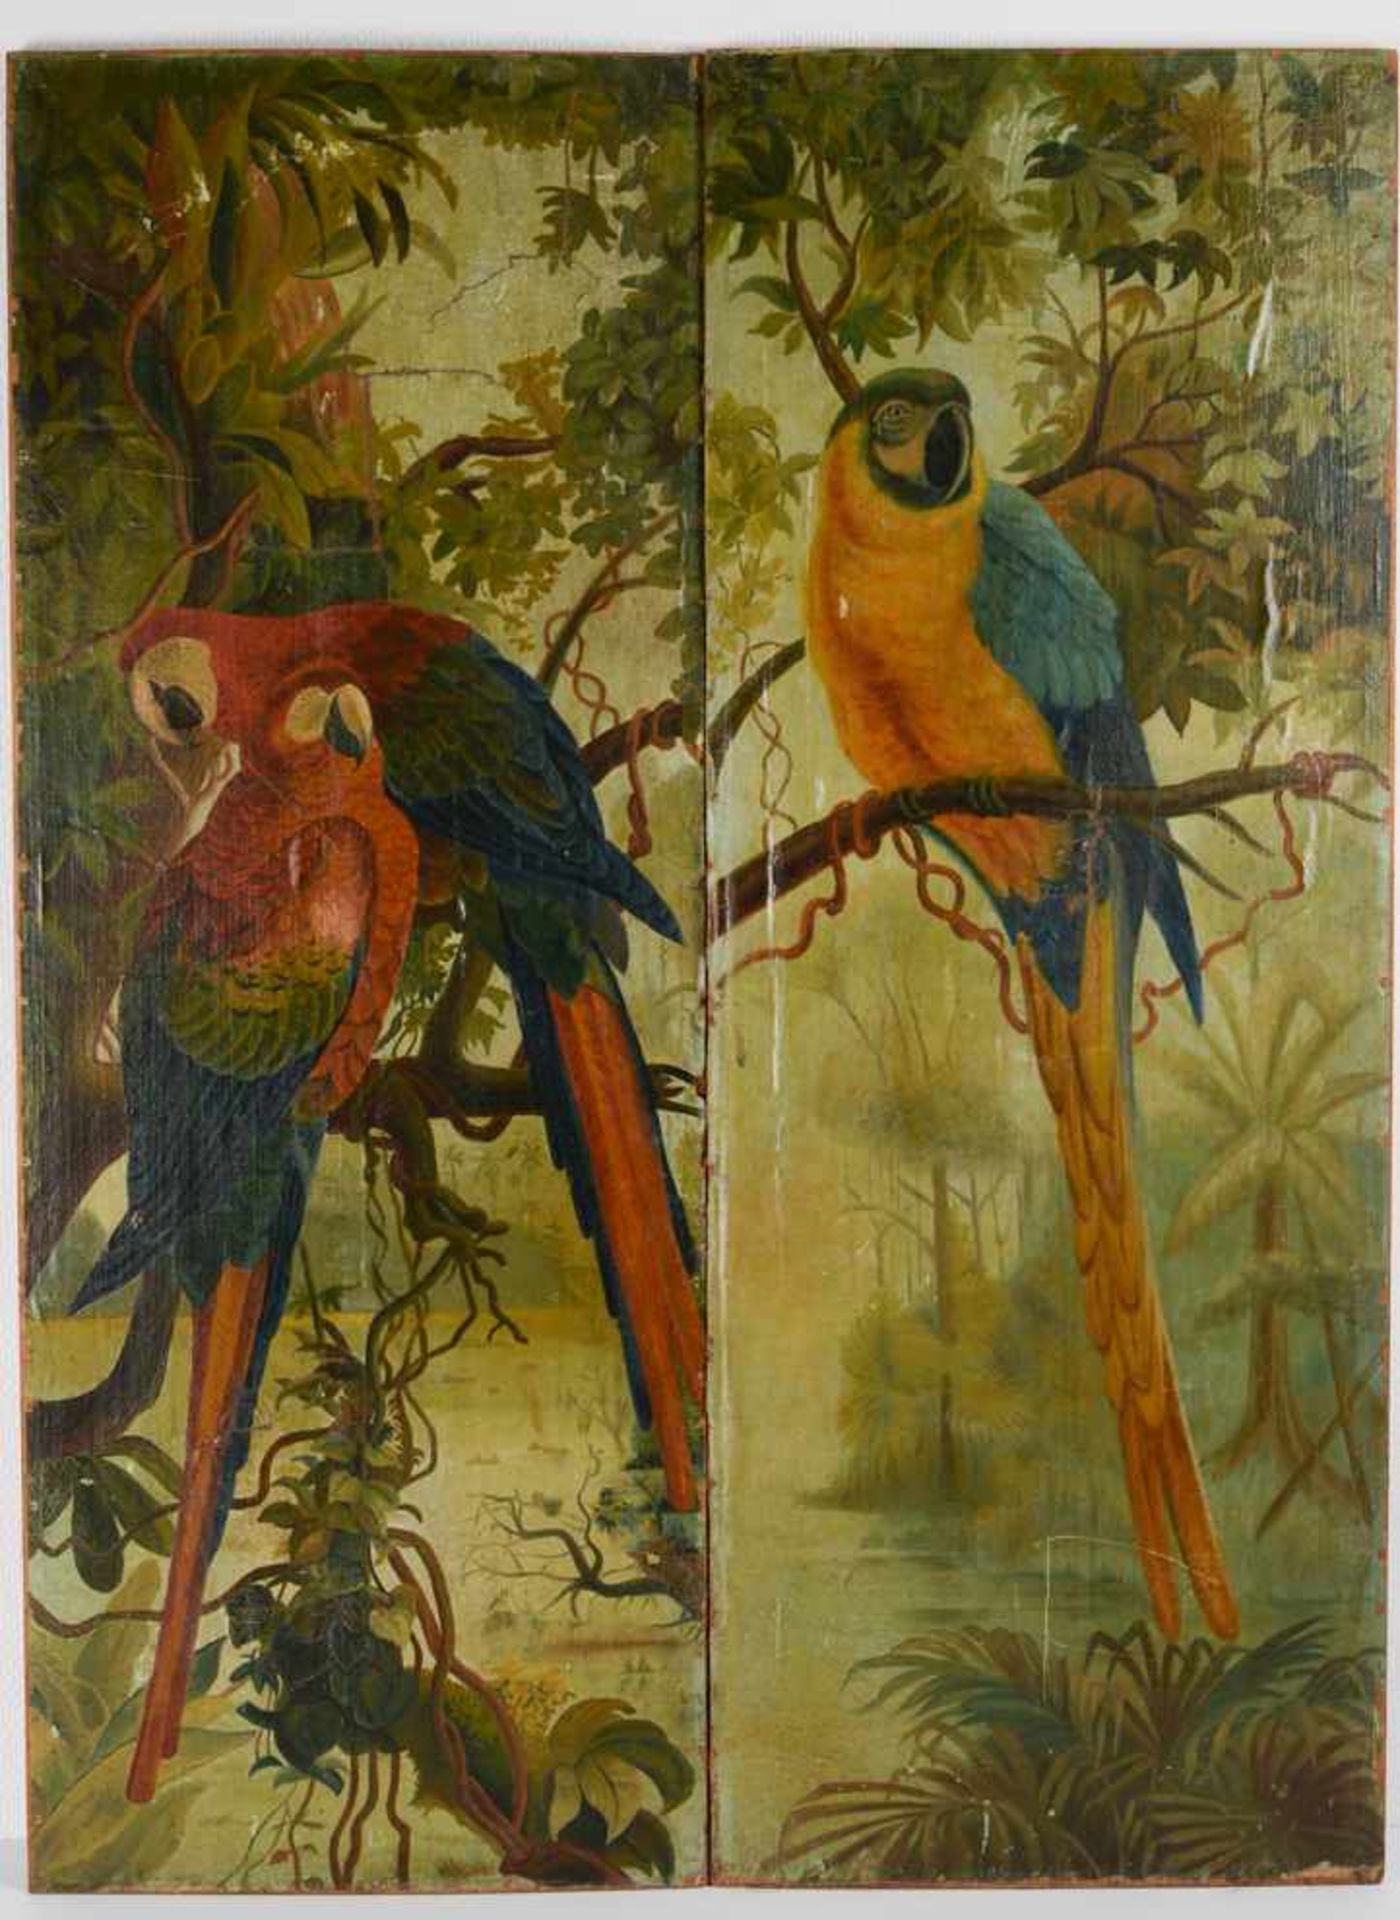 Papageienvögel in natürlicher Umgebung. Öl auf Leinwand auf Holz kaschiert, Datierung um 1890,